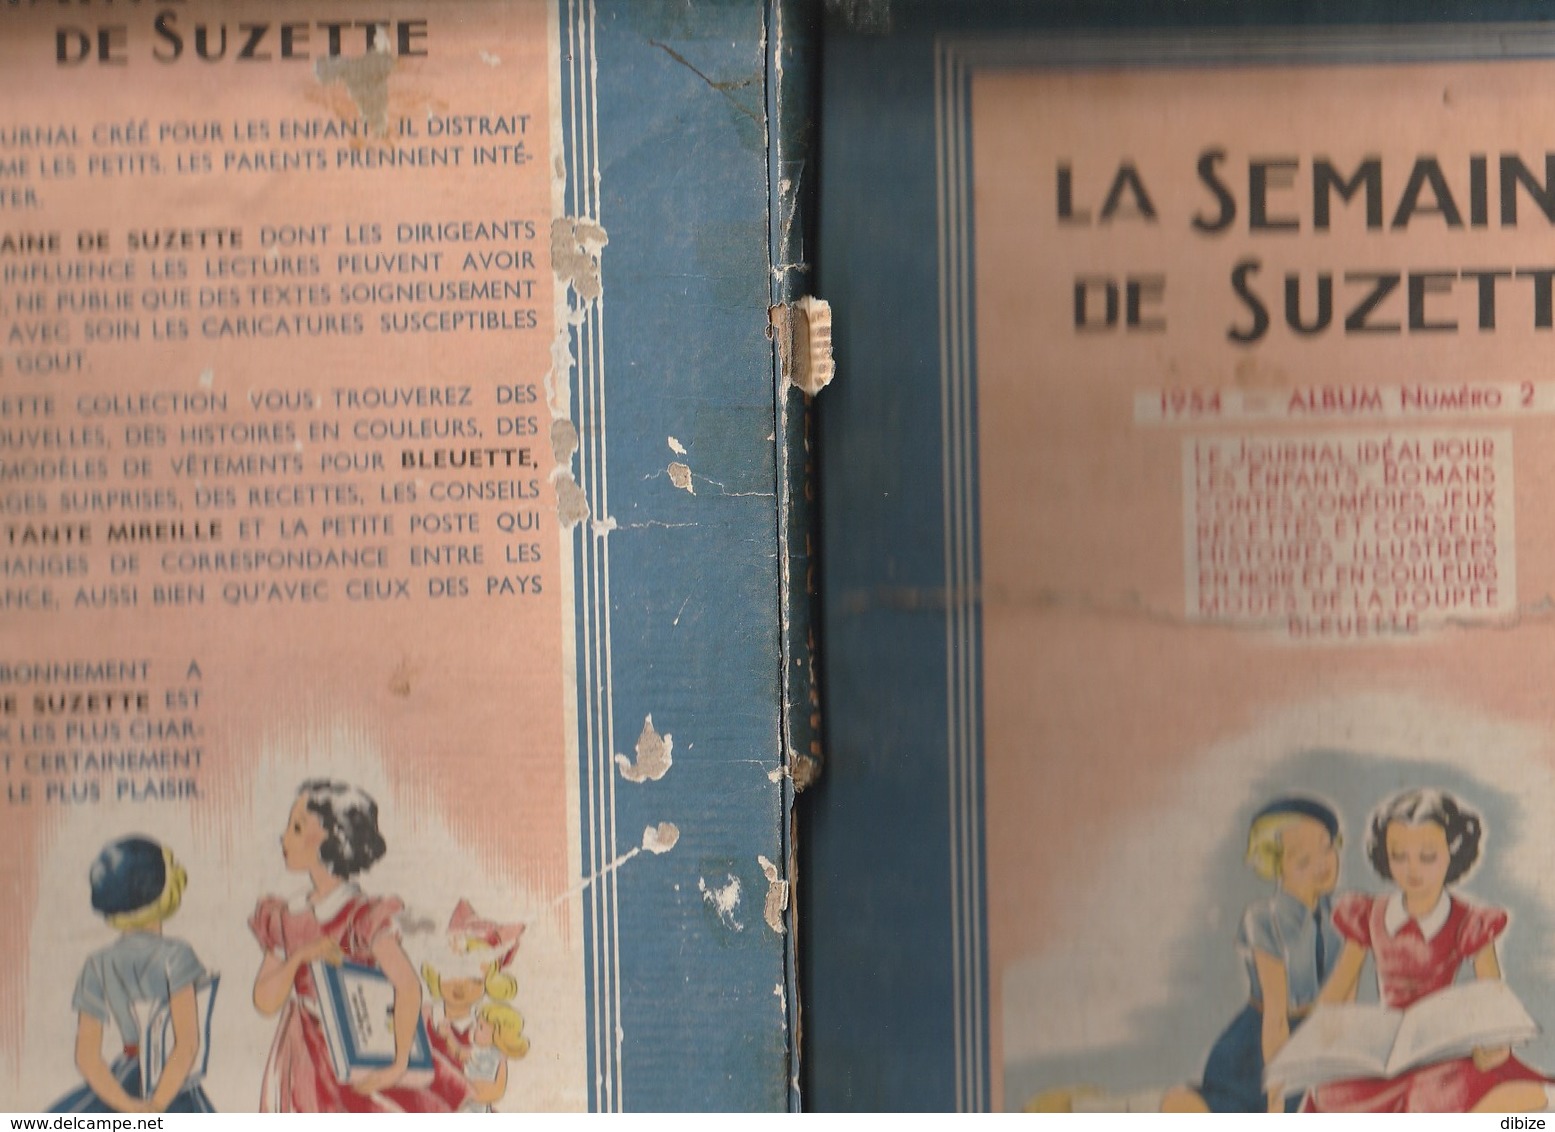 Bande Dessinée. La Semaine De Suzette. Album N° 2. 1954. Fascicules N° 19 à 35. Complet. - La Semaine De Suzette